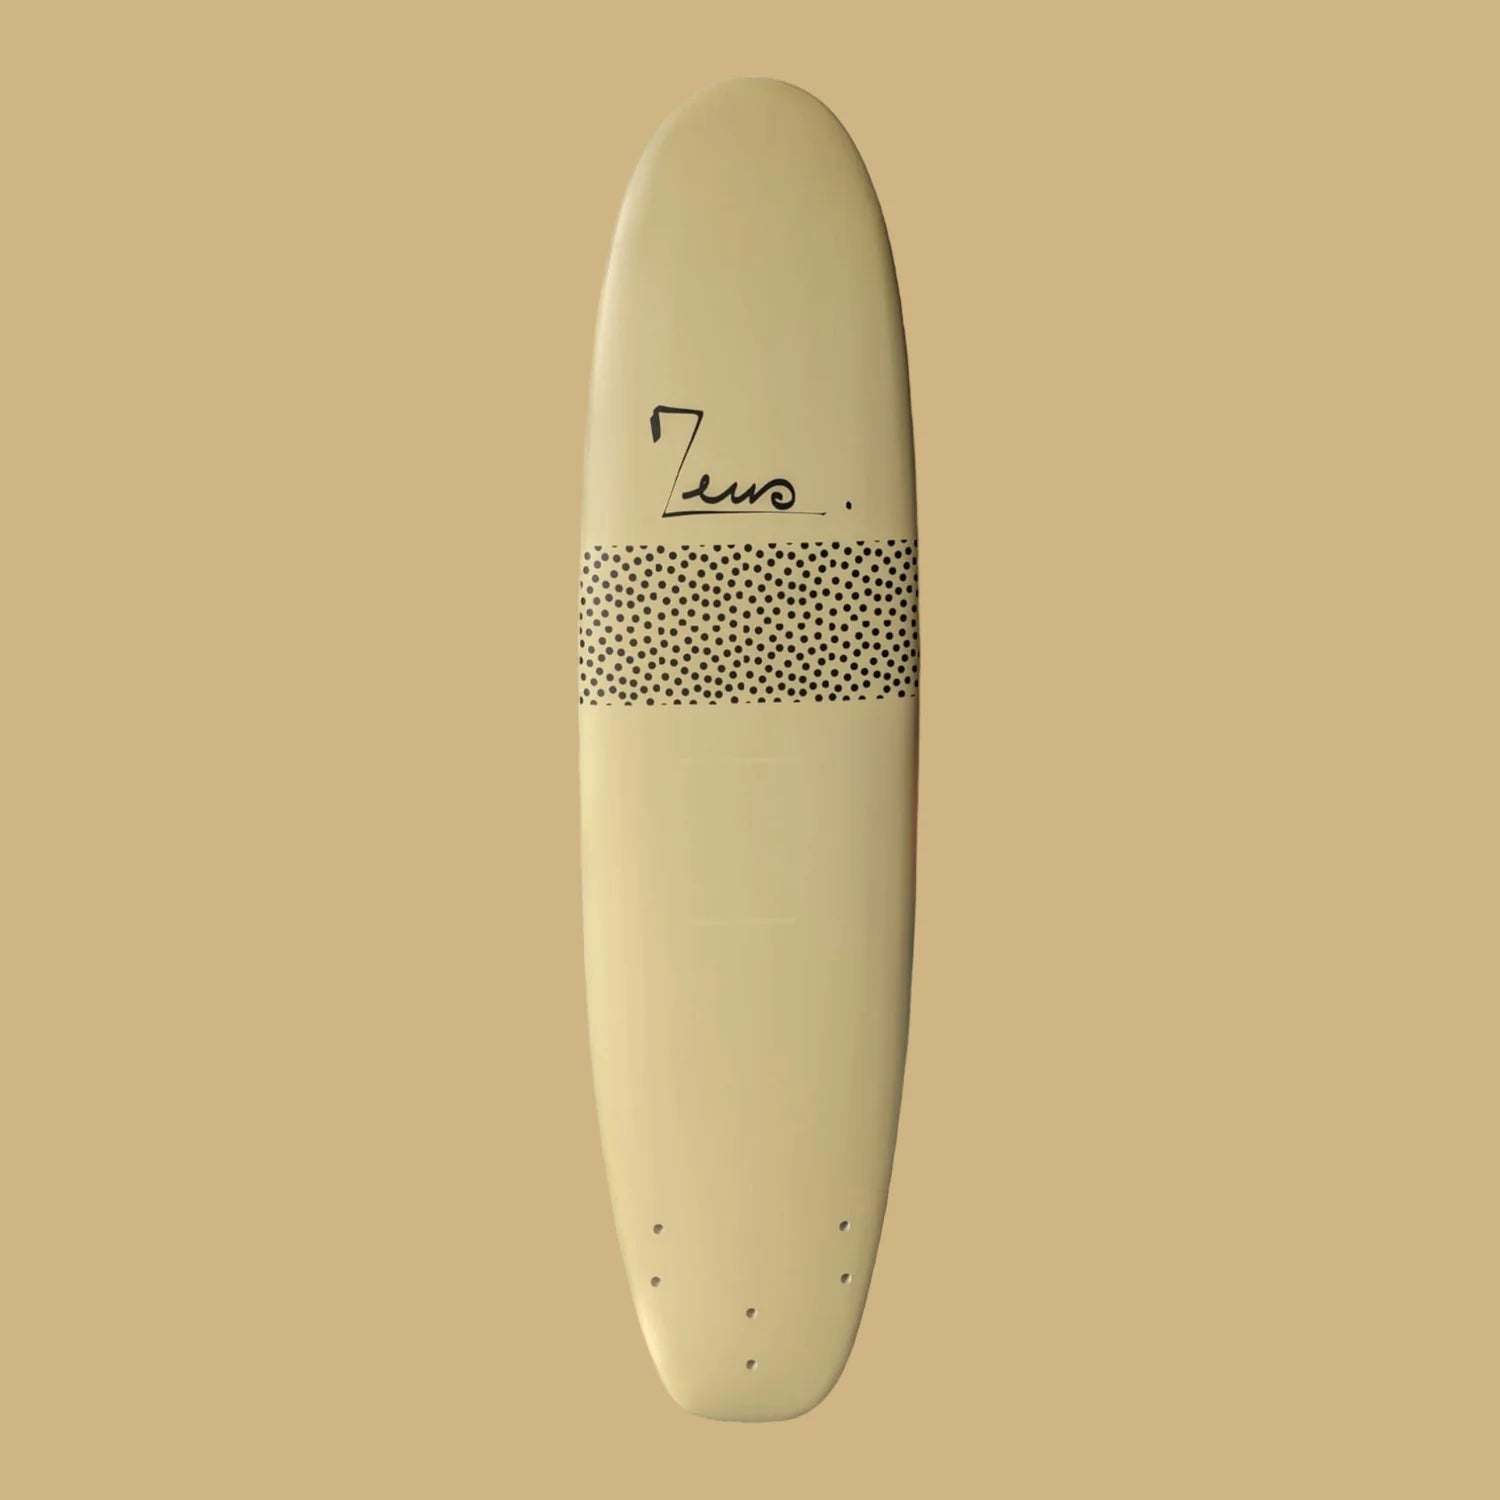 The best foam surfboard to start surfing this year. Zeus Progresss 7'6 Softop Foam Surfboard - Best Board - Better than the Olaian or Softech